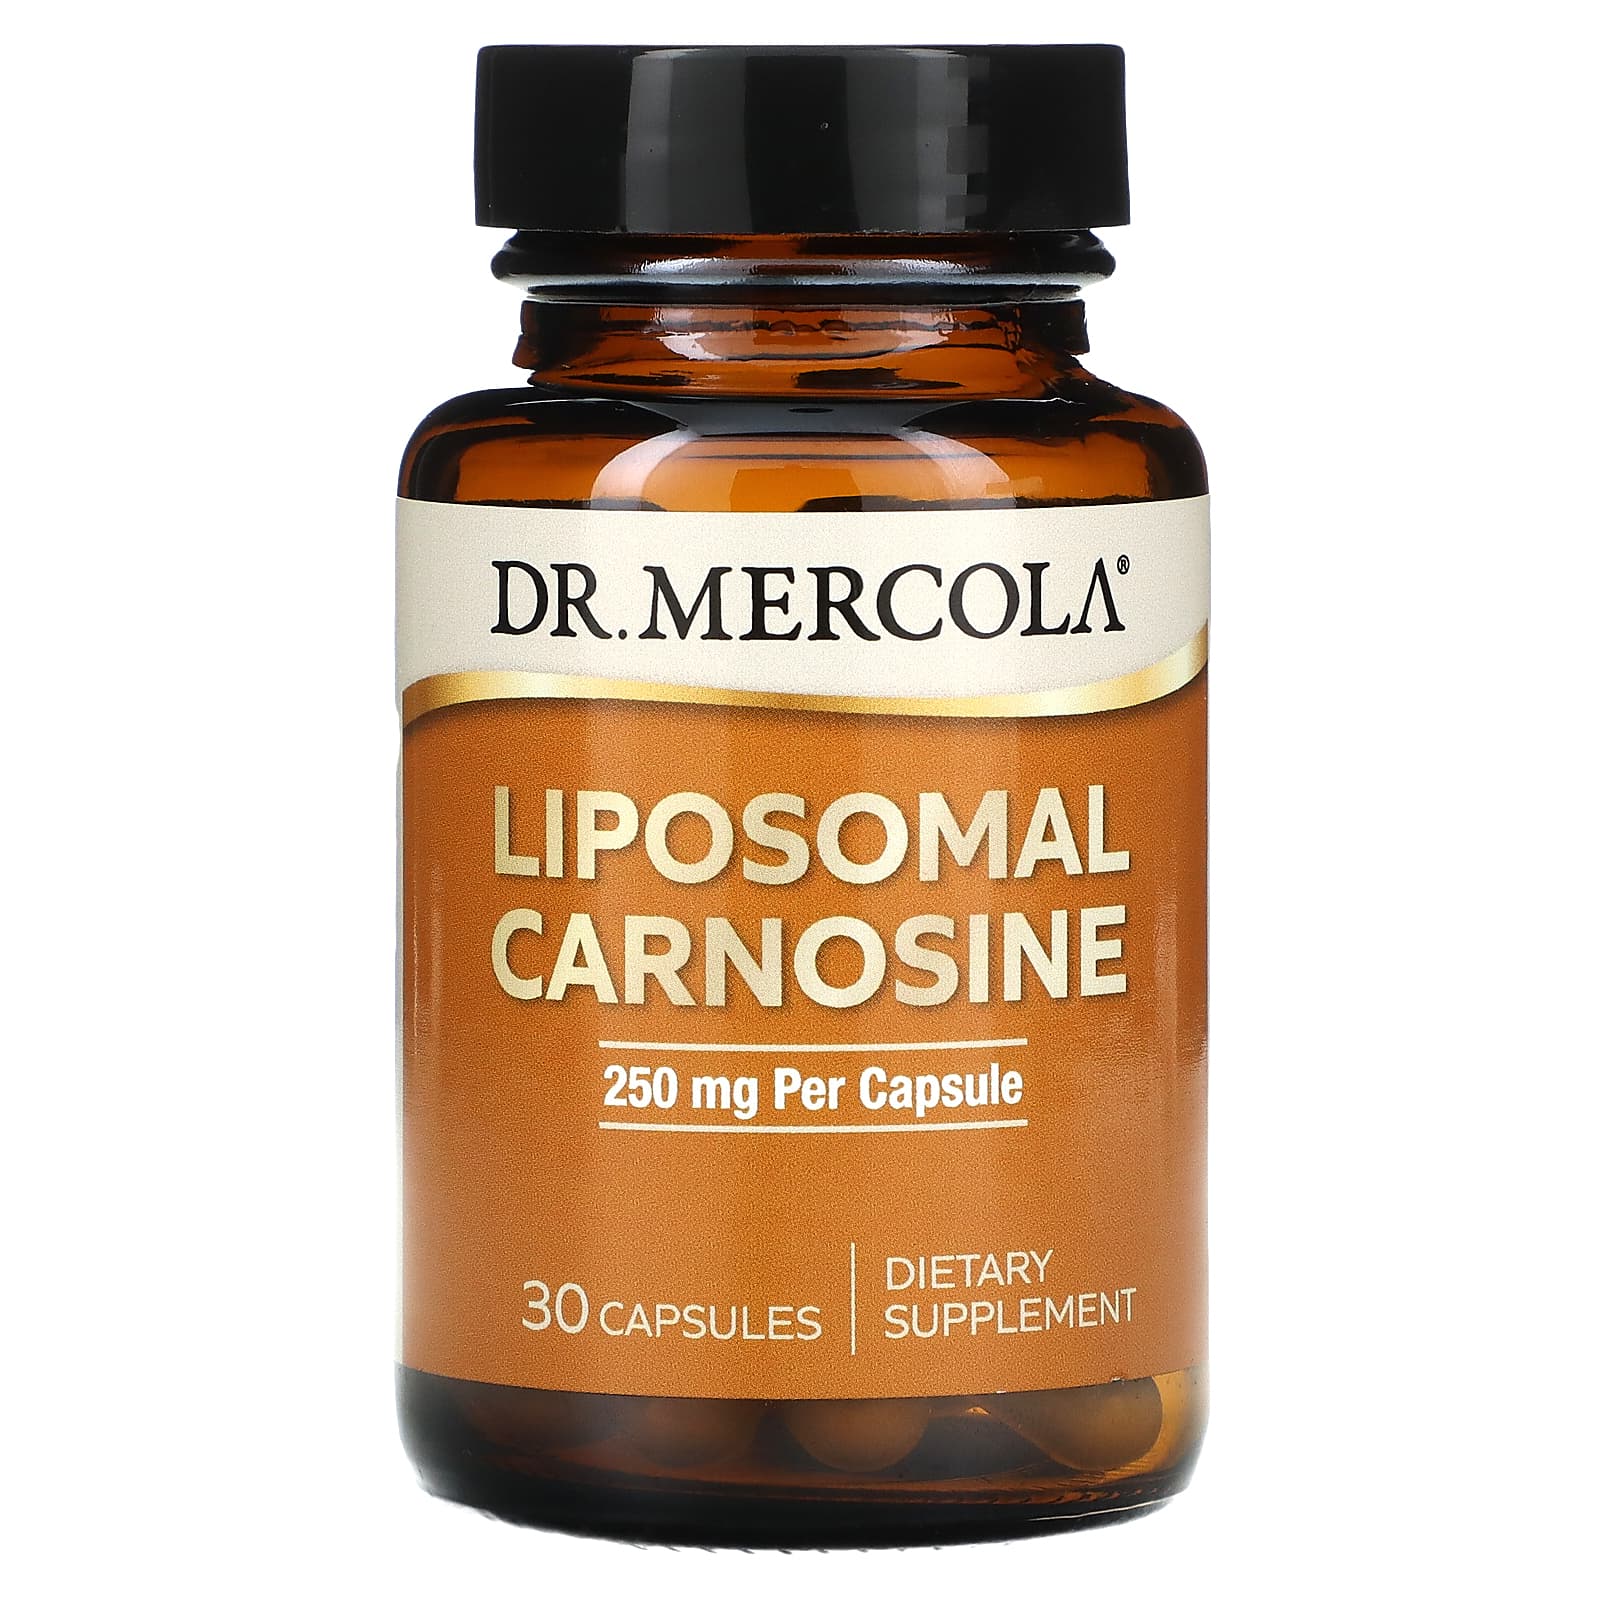 Dr. Mercola Липосомальный карнозин 250 мг 30 капсул dr mercola липосомальный глутатион 175 мг 60 капсул